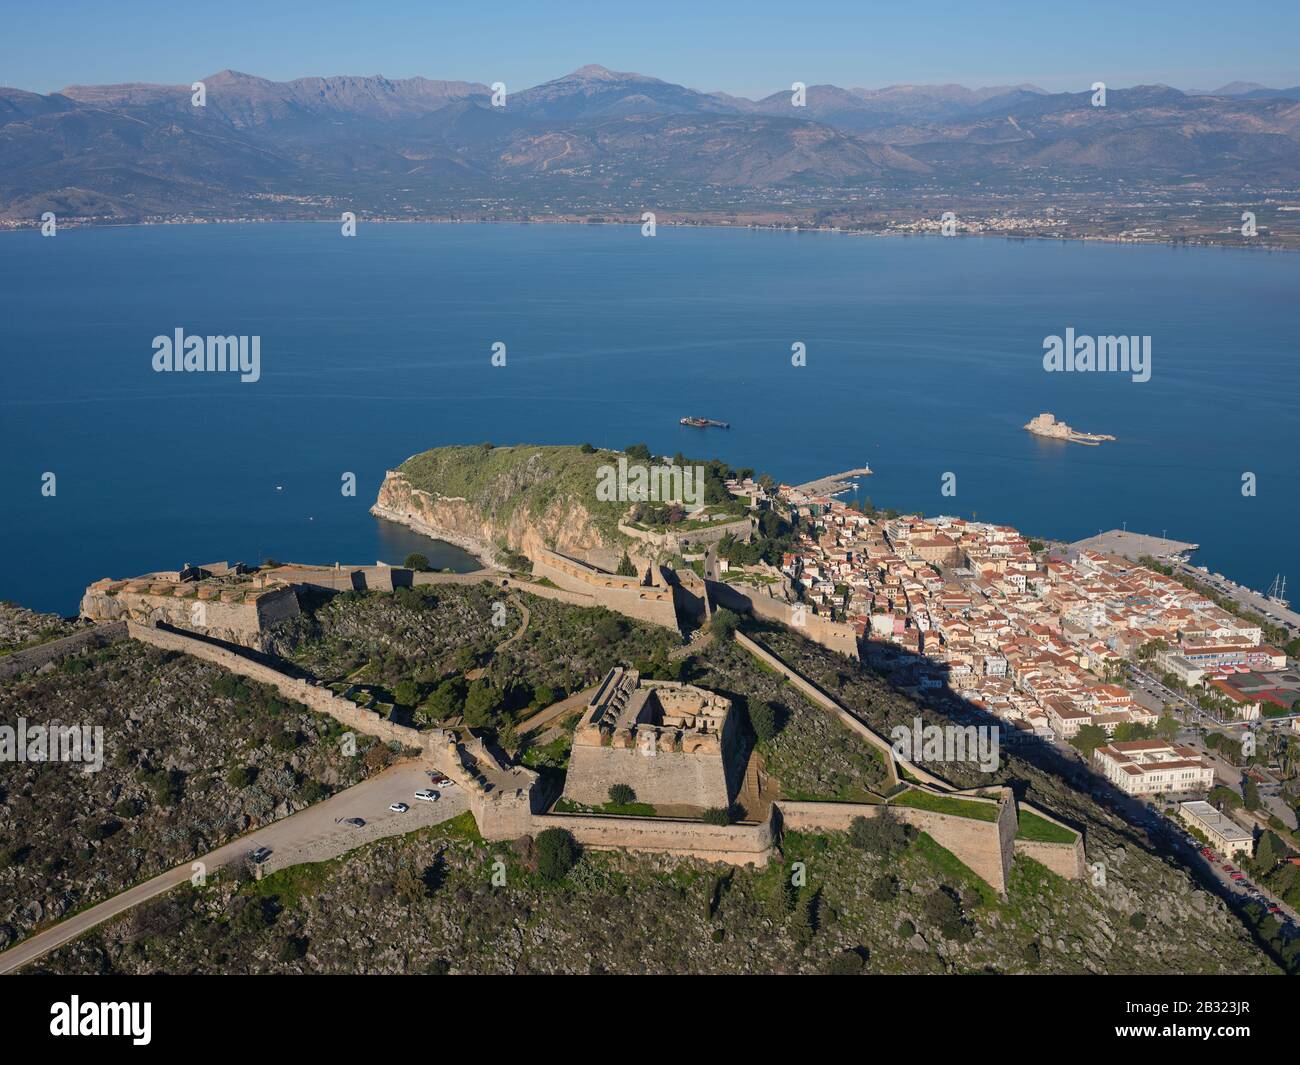 LUFTAUFNAHME. Festung von Palamidi mit Blick auf die Stadt Nafplio. Argolis, Peloponnes, Griechenland. Stockfoto